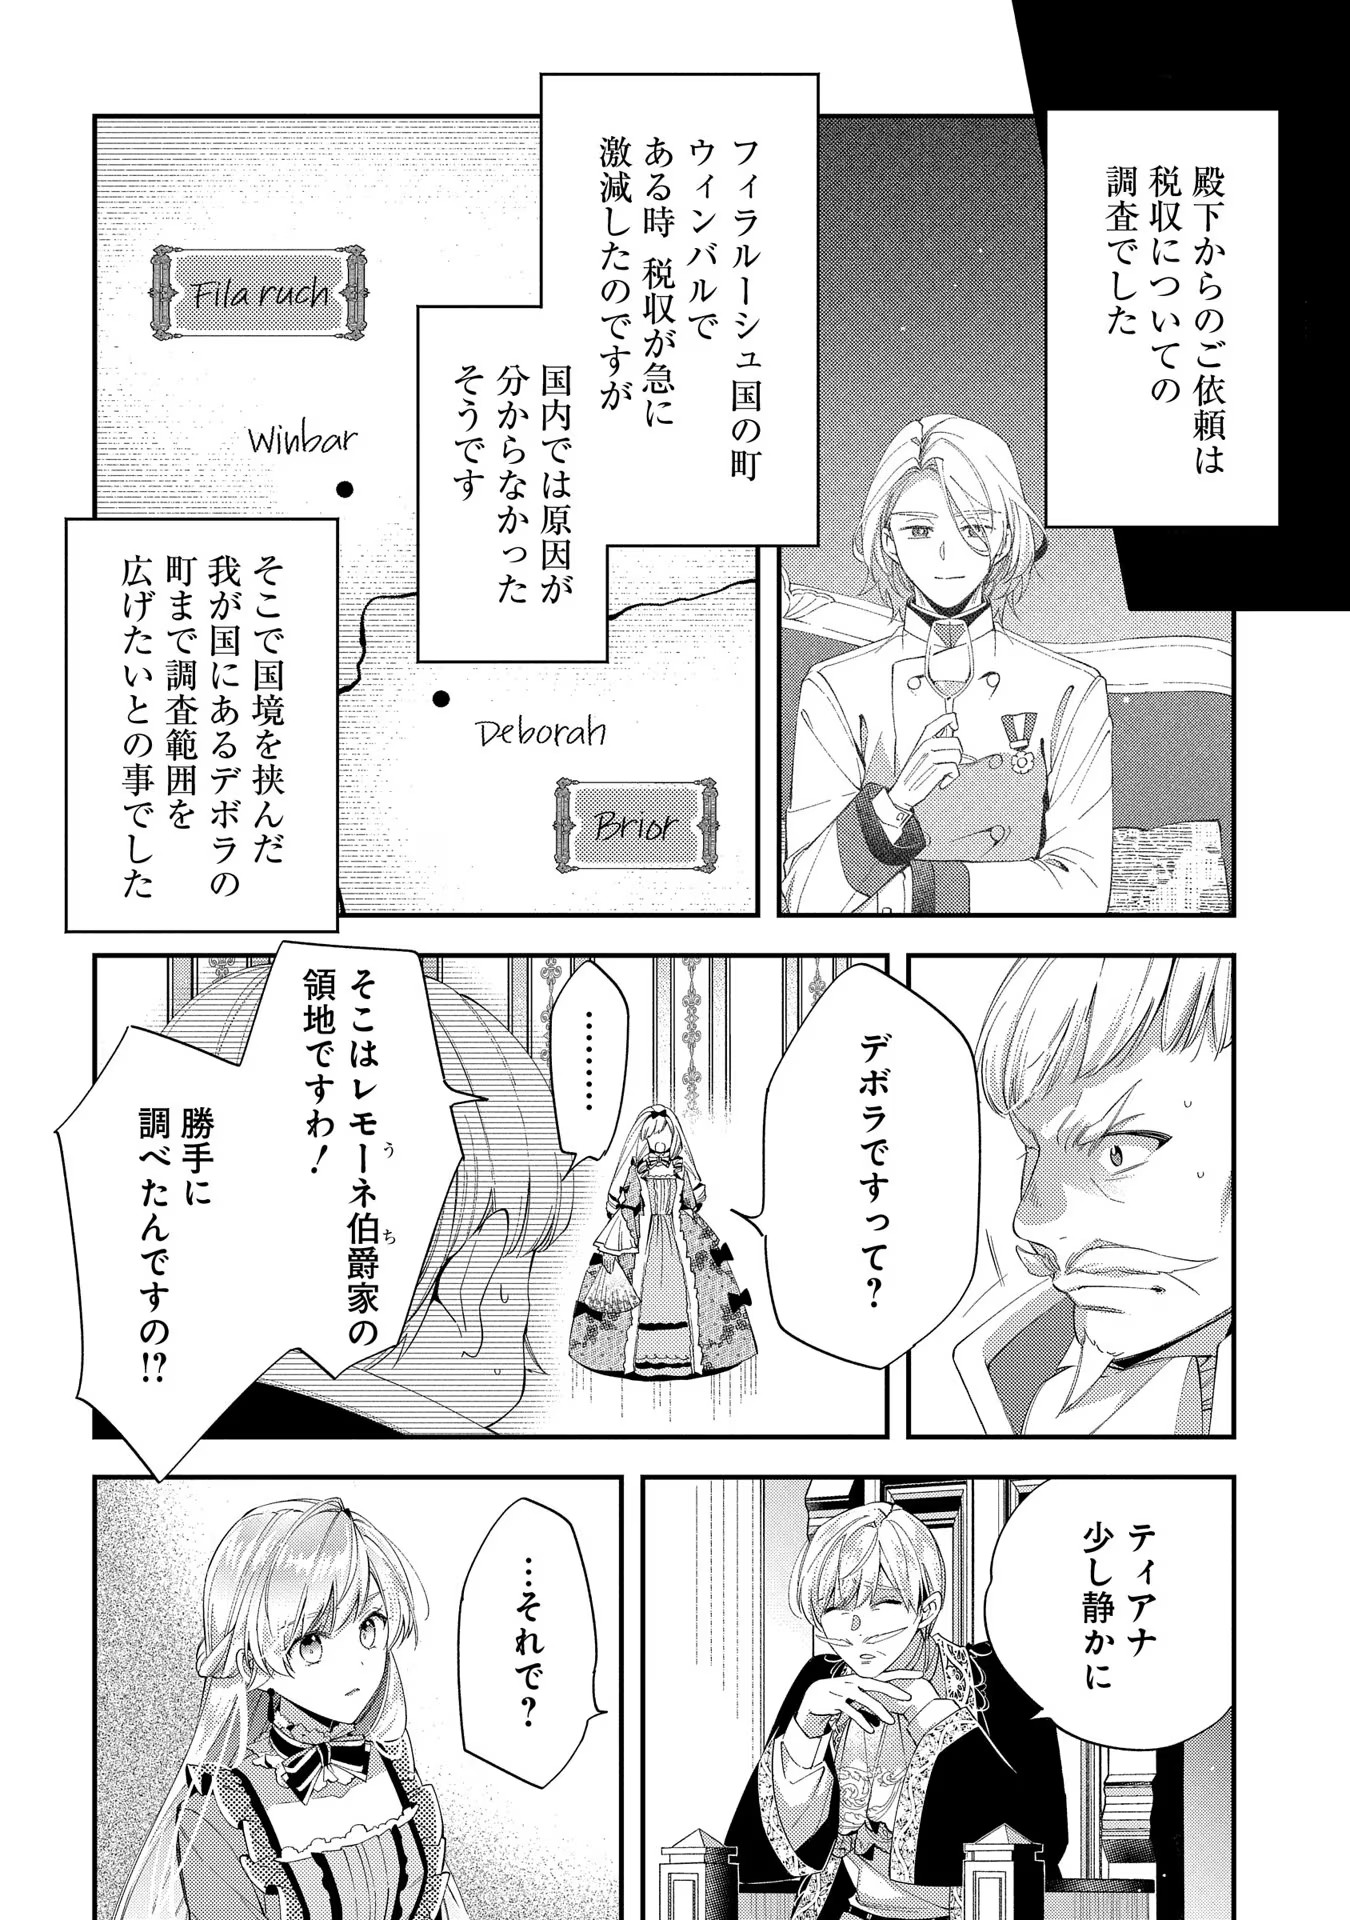 Outaishi ni Konyaku Hakisareta no de, Mou Baka no Furi wa Yameyou to Omoimasu - Chapter 16 - Page 12